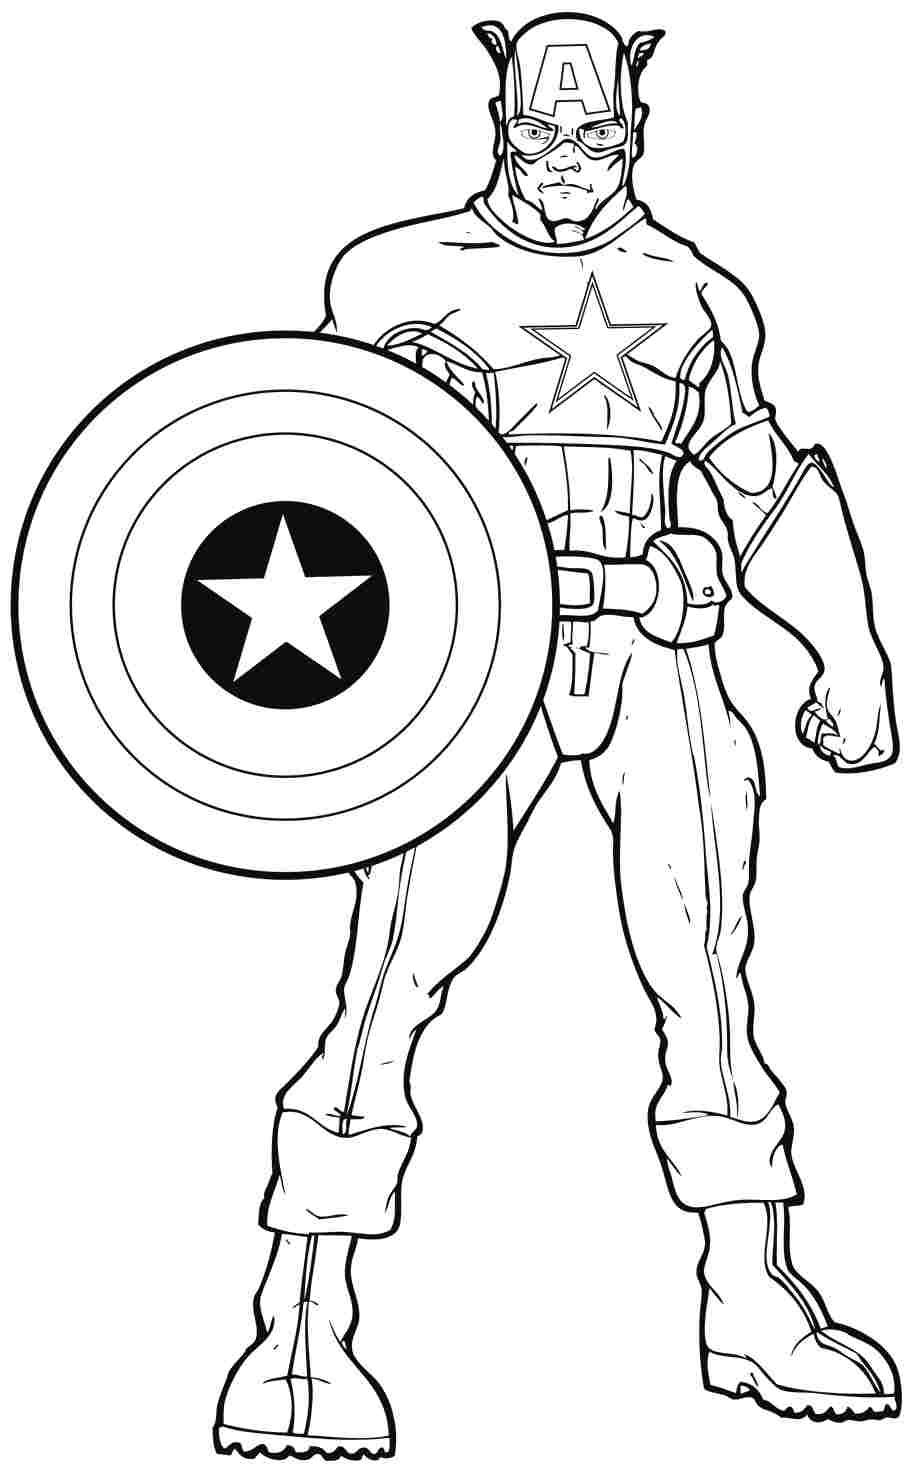 Раскрашенный Капитан Америка - персонаж из комиксов (персонаж)